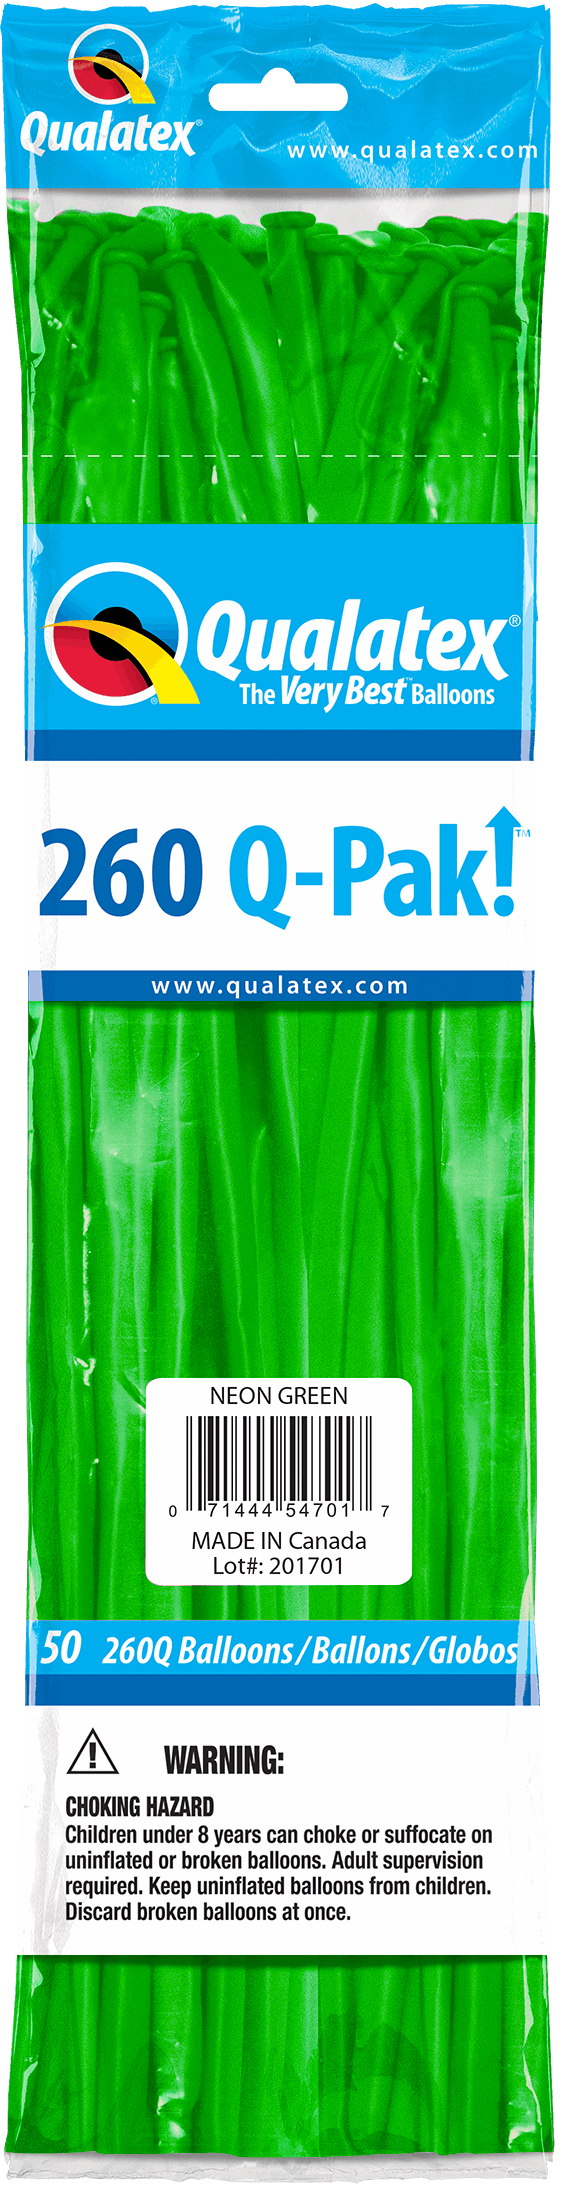 Q-Pak Poche de 50 ballons 260Q Qualatex 100% biodégradables